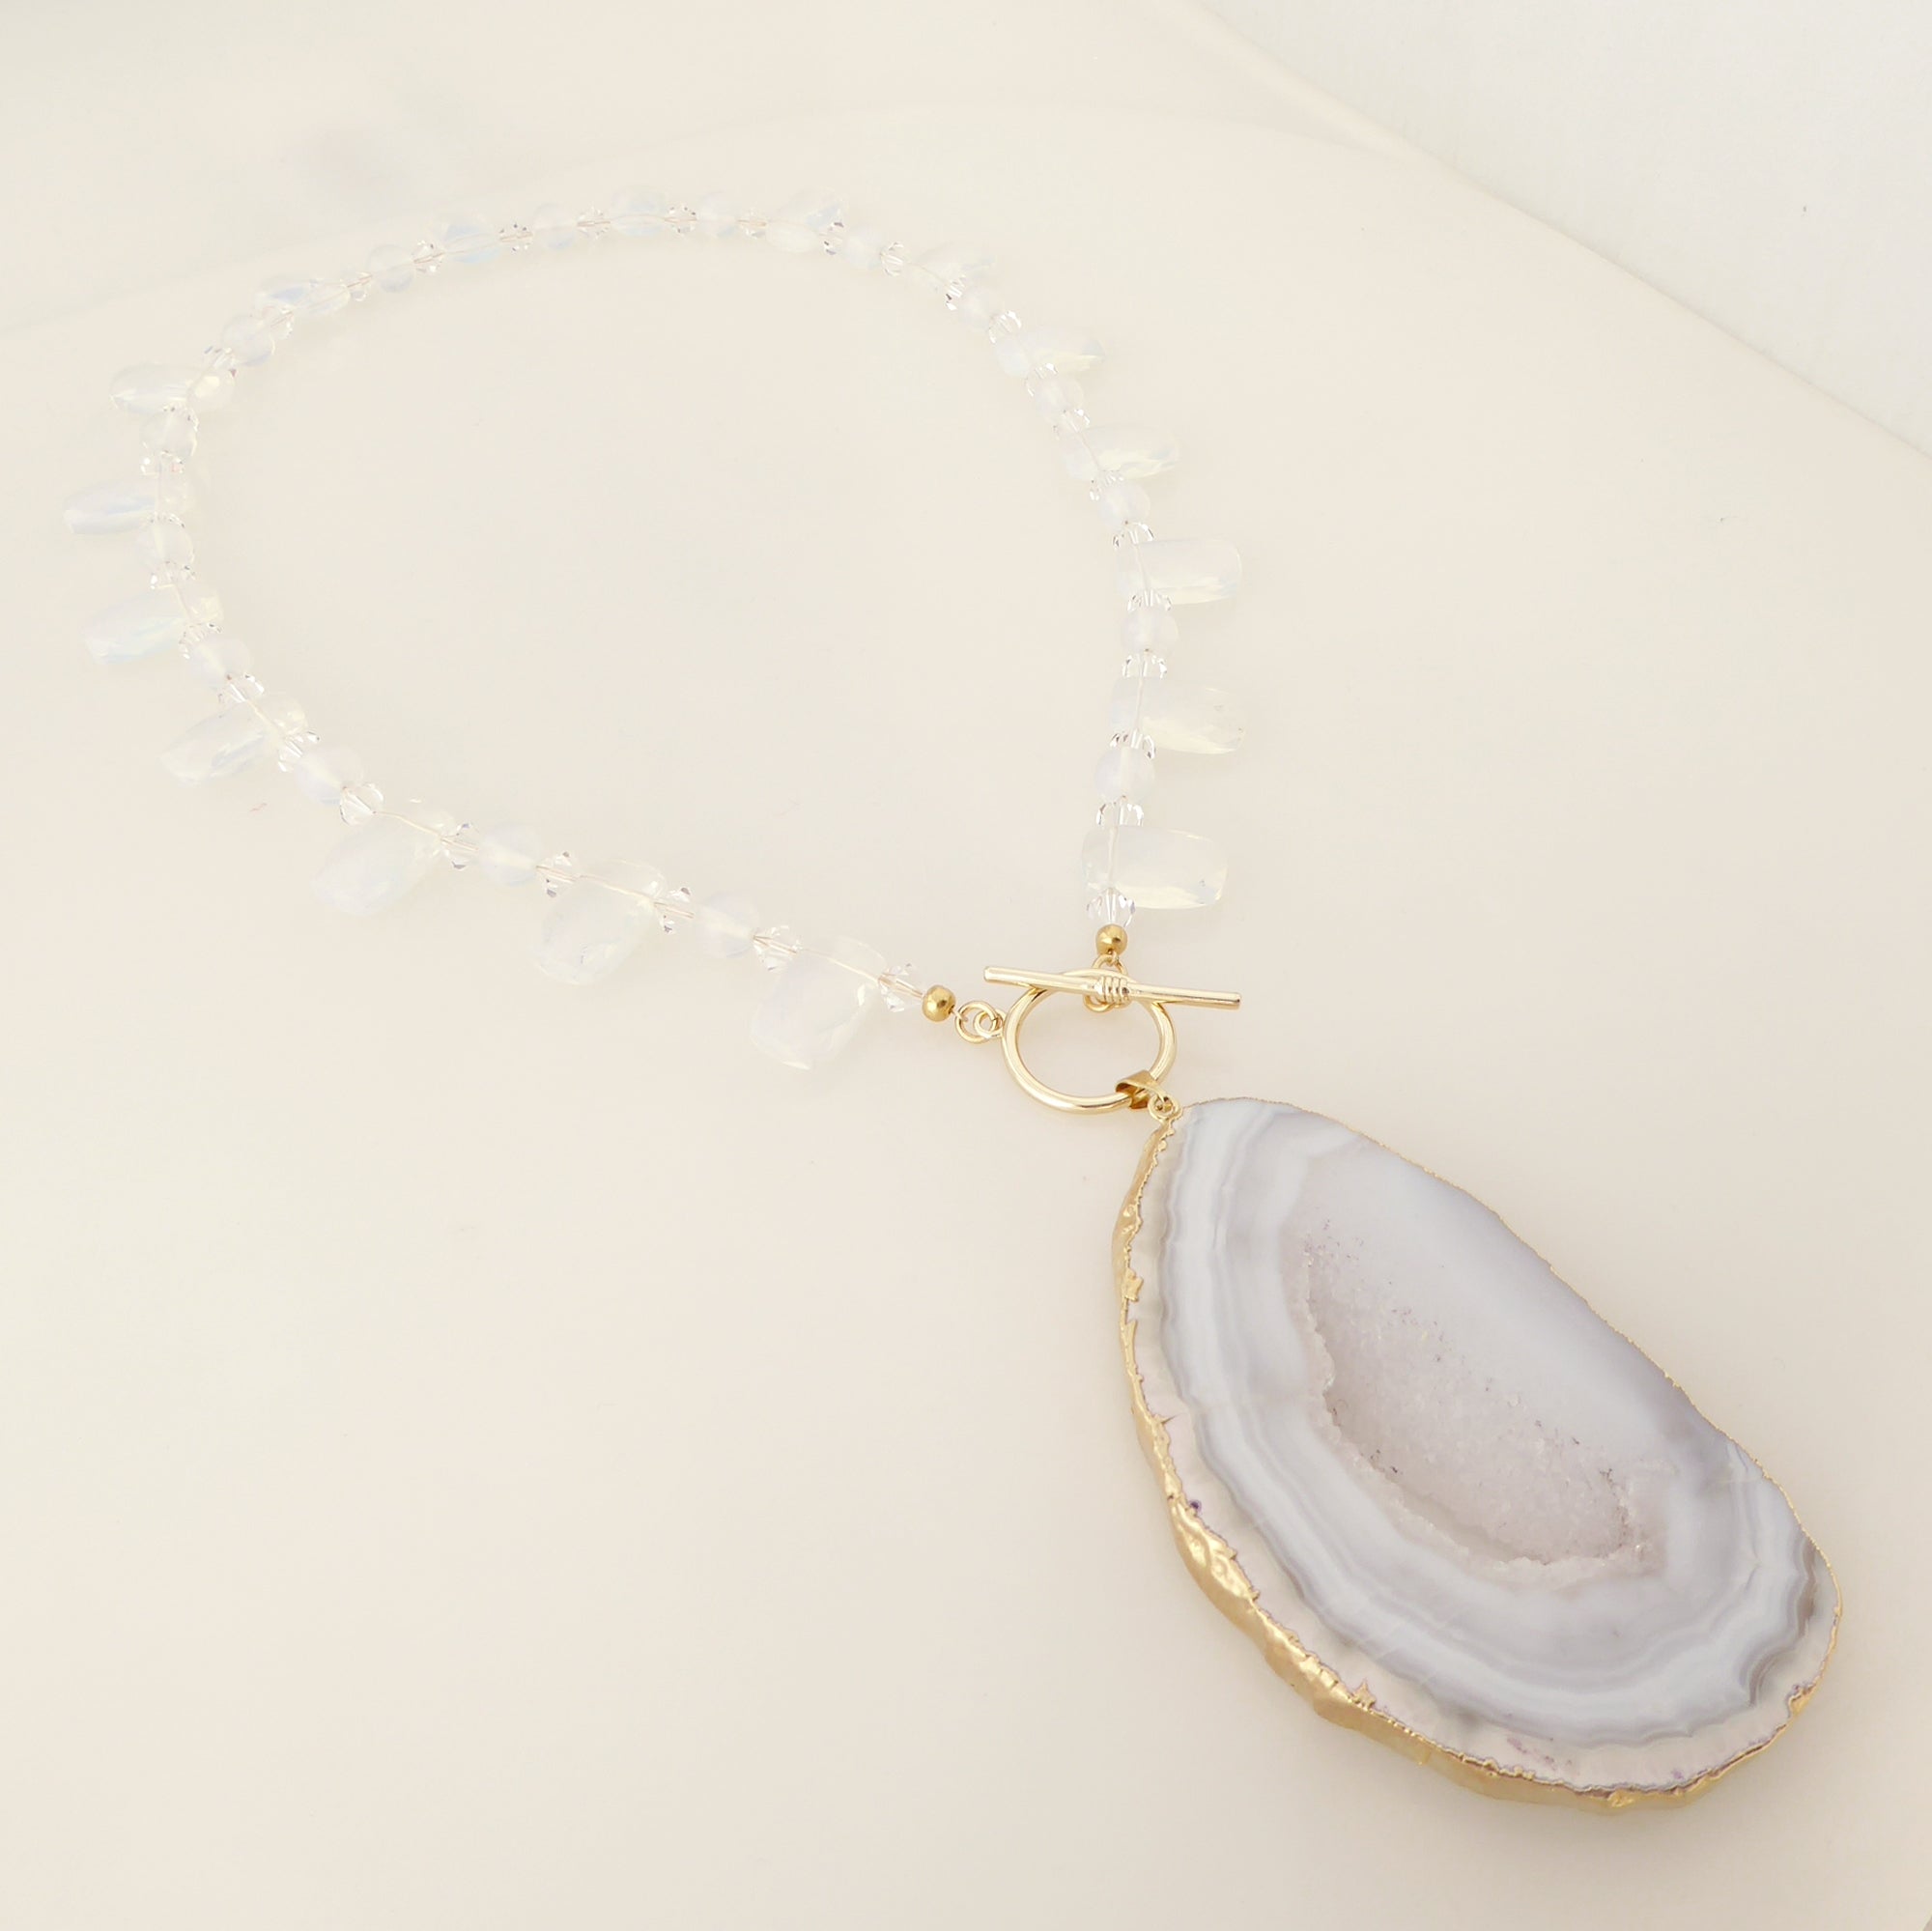    Dove gray agate slice necklace by Jenny Dayco 2